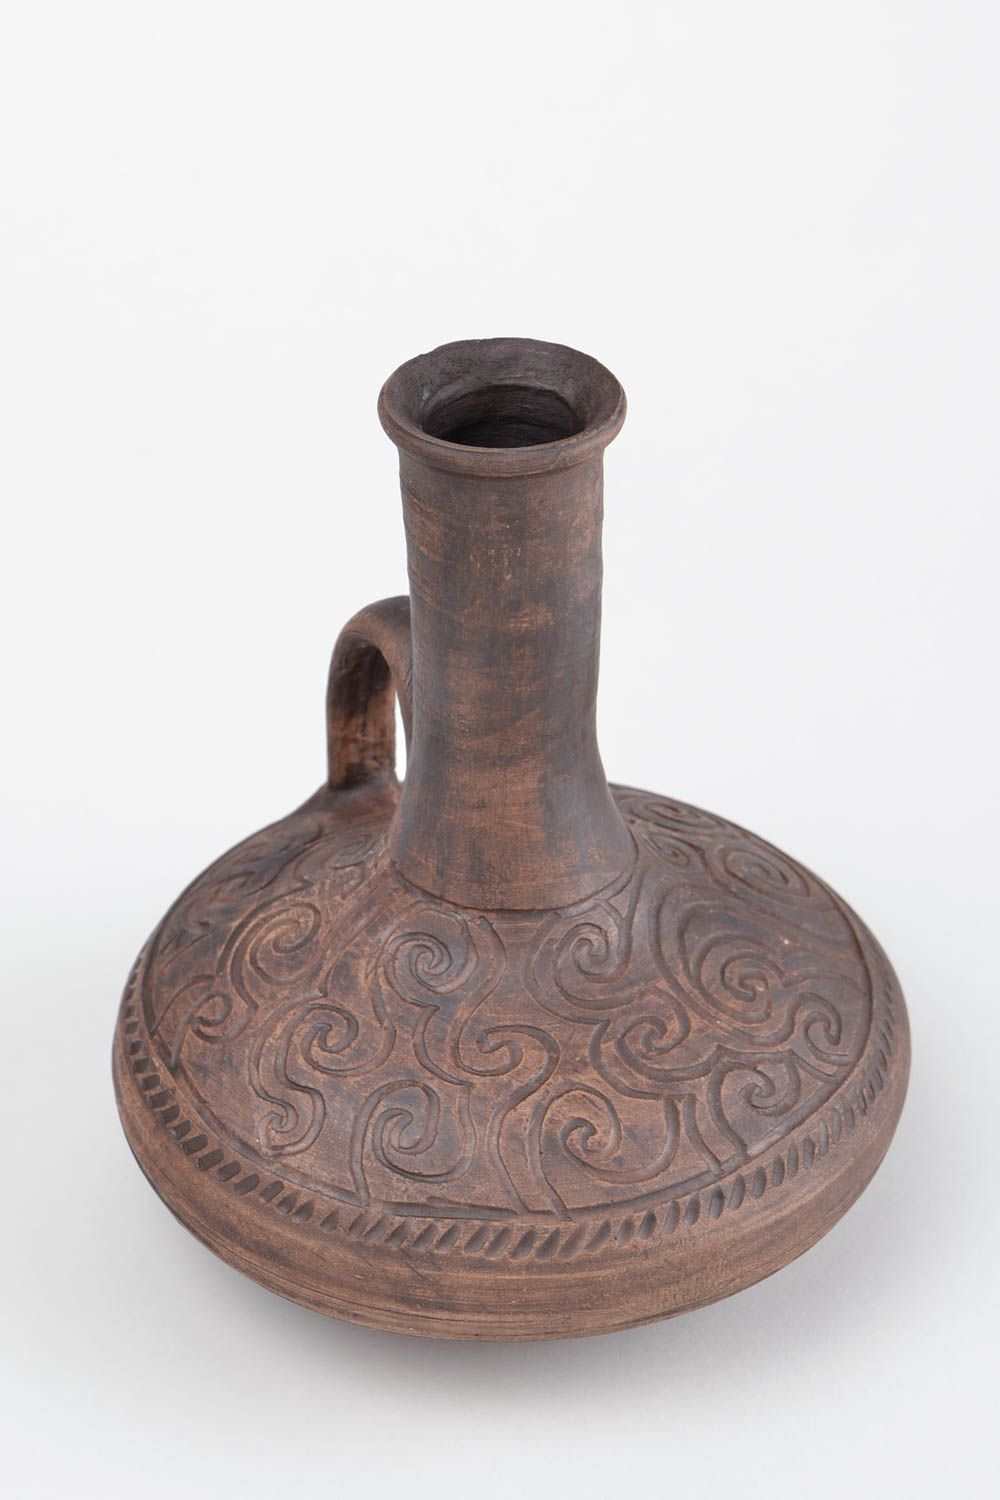 15 oz ceramic wine carafe in Arabian style 1,7 lb photo 4